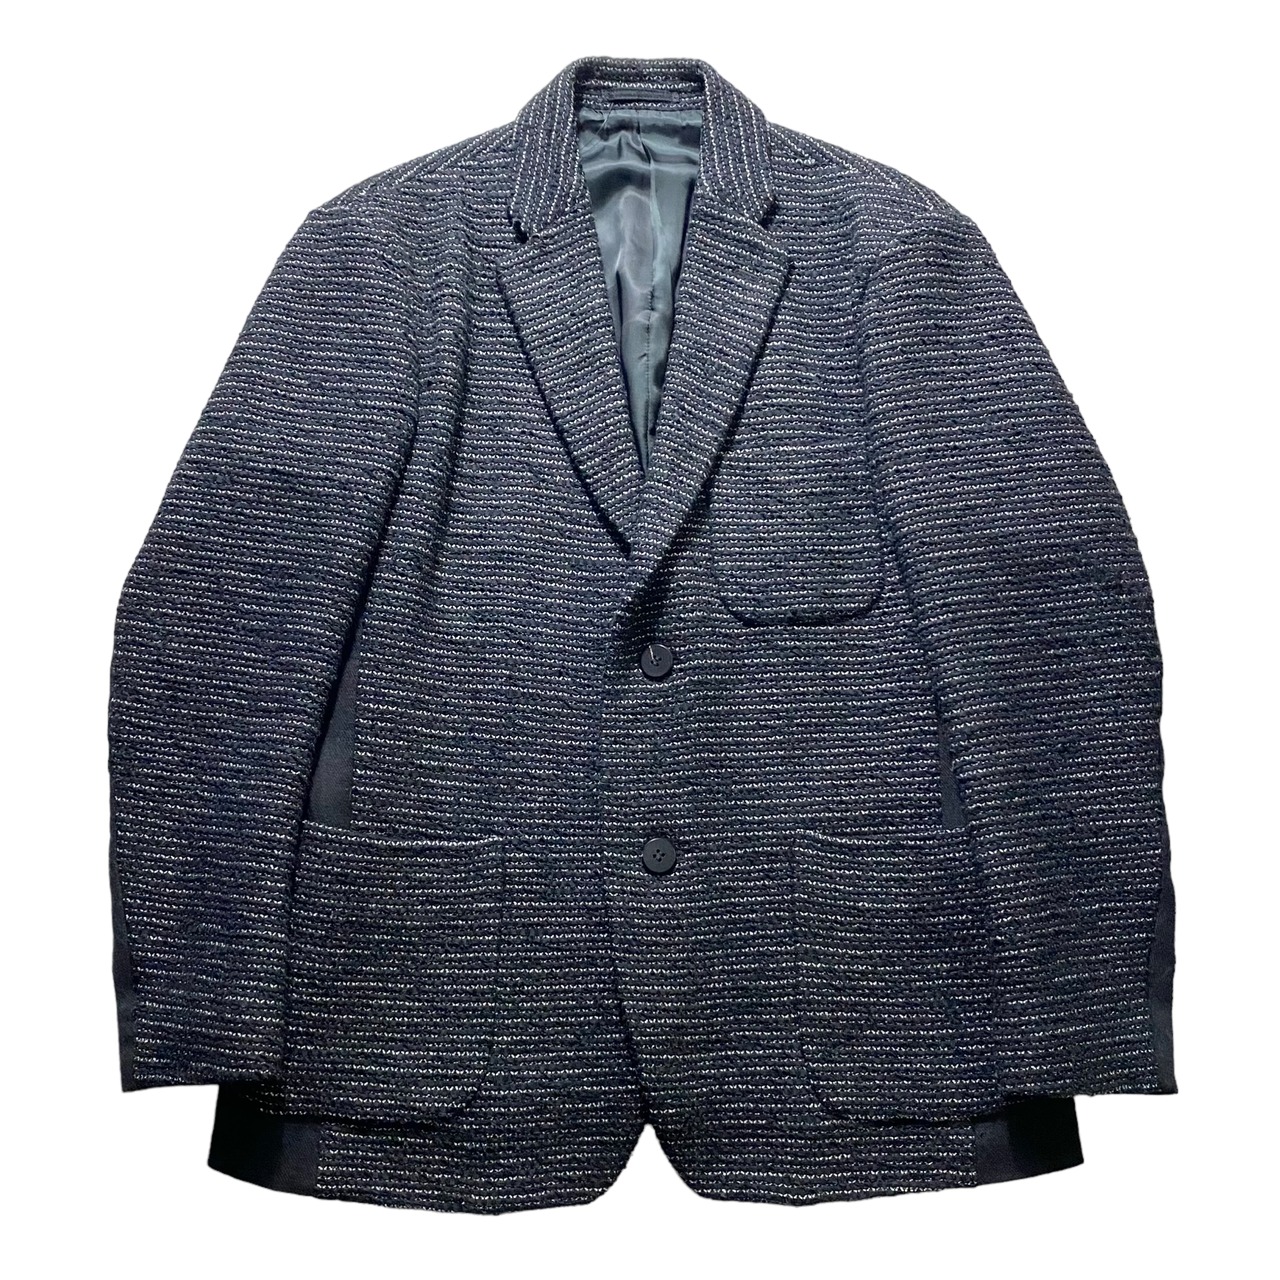 2017AW ISSEY MIYAKE MEN switching knit tailored jacket